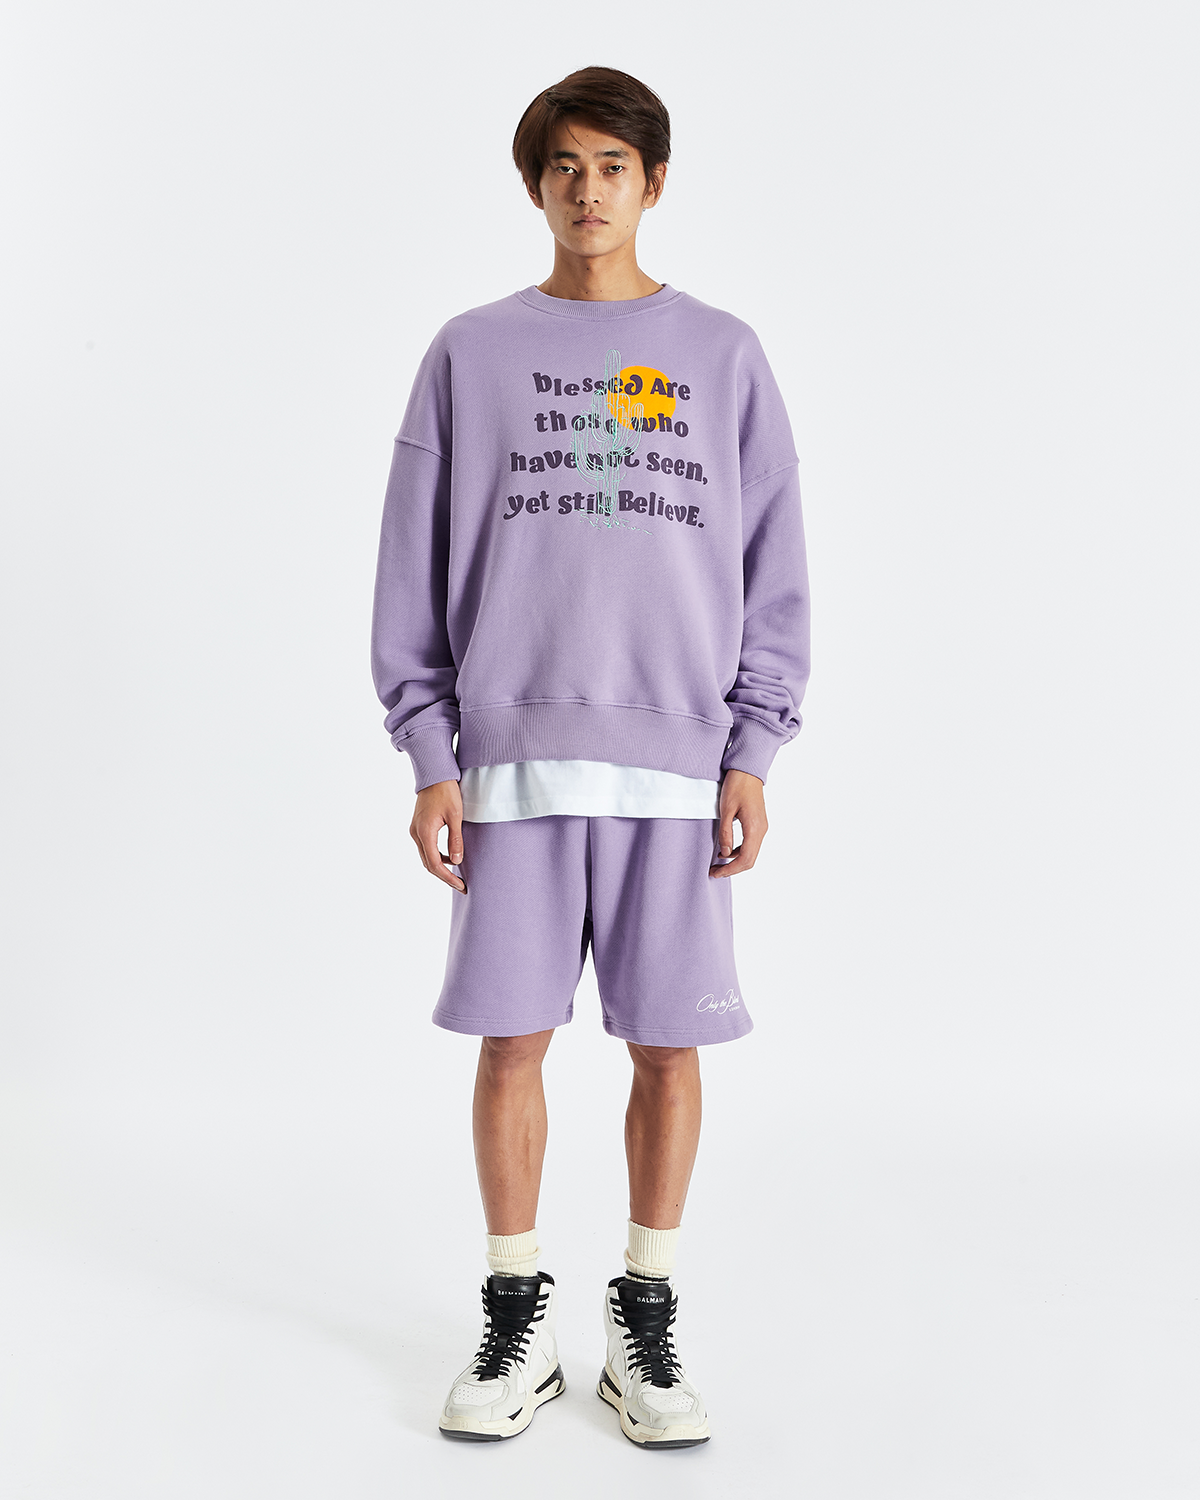 Lavendel Essential Shorts